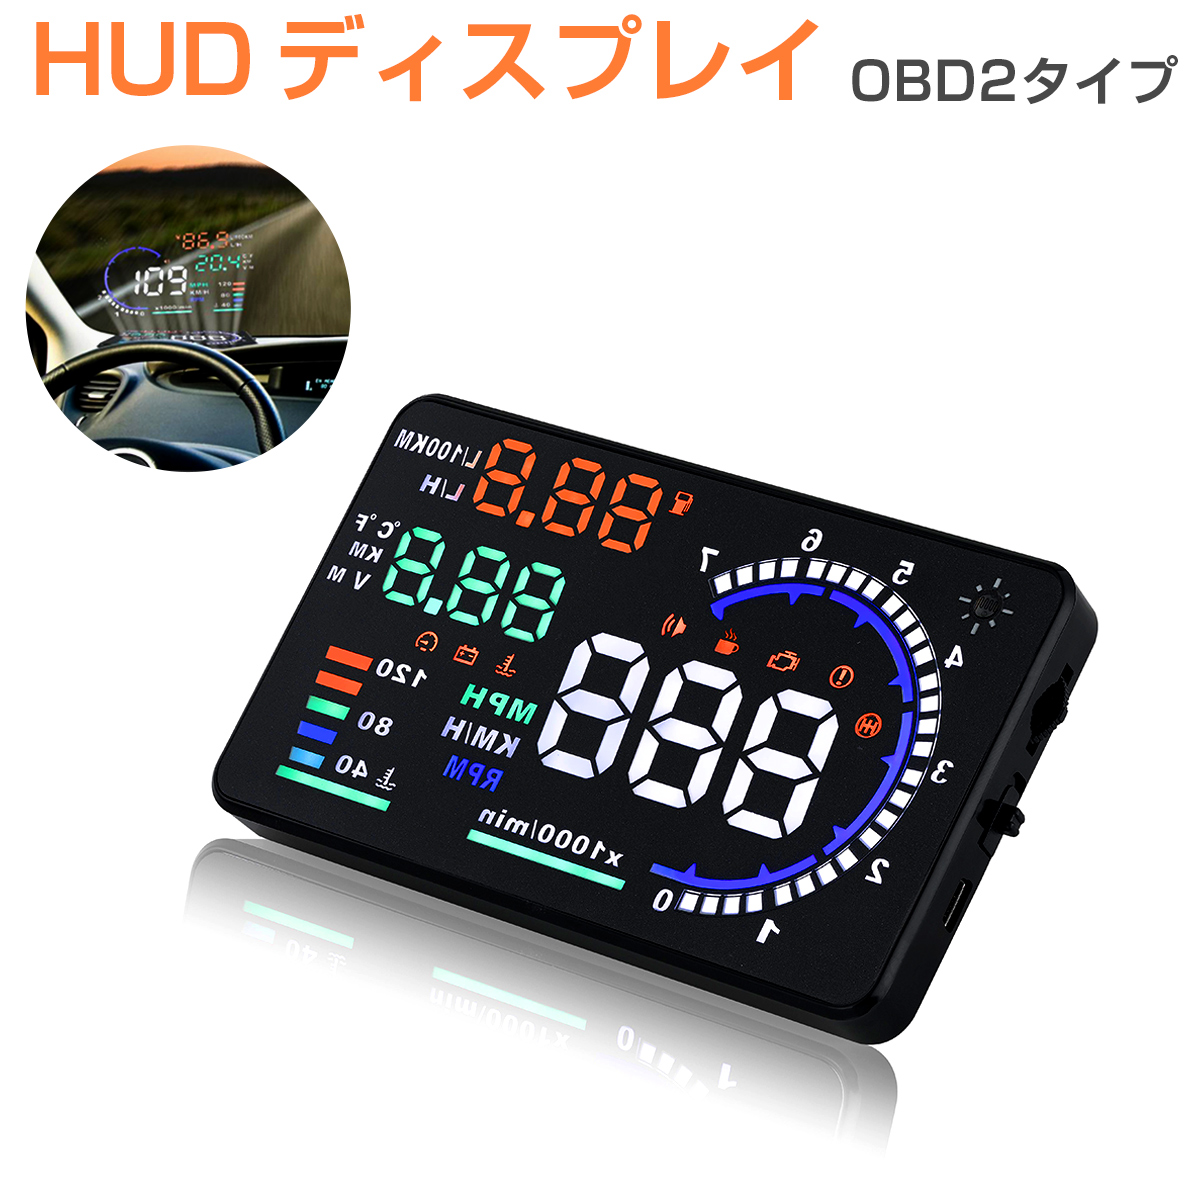 楽天市場 ヘッドアップディスプレイ Hud A8 Obd2 5 5インチ 大画面 カラフル 日本語説明書 車載スピードメーター ハイブリッド車対応 フロントガラス 速度 回転数 燃費 警告機能 6ヶ月保証 プロステーション